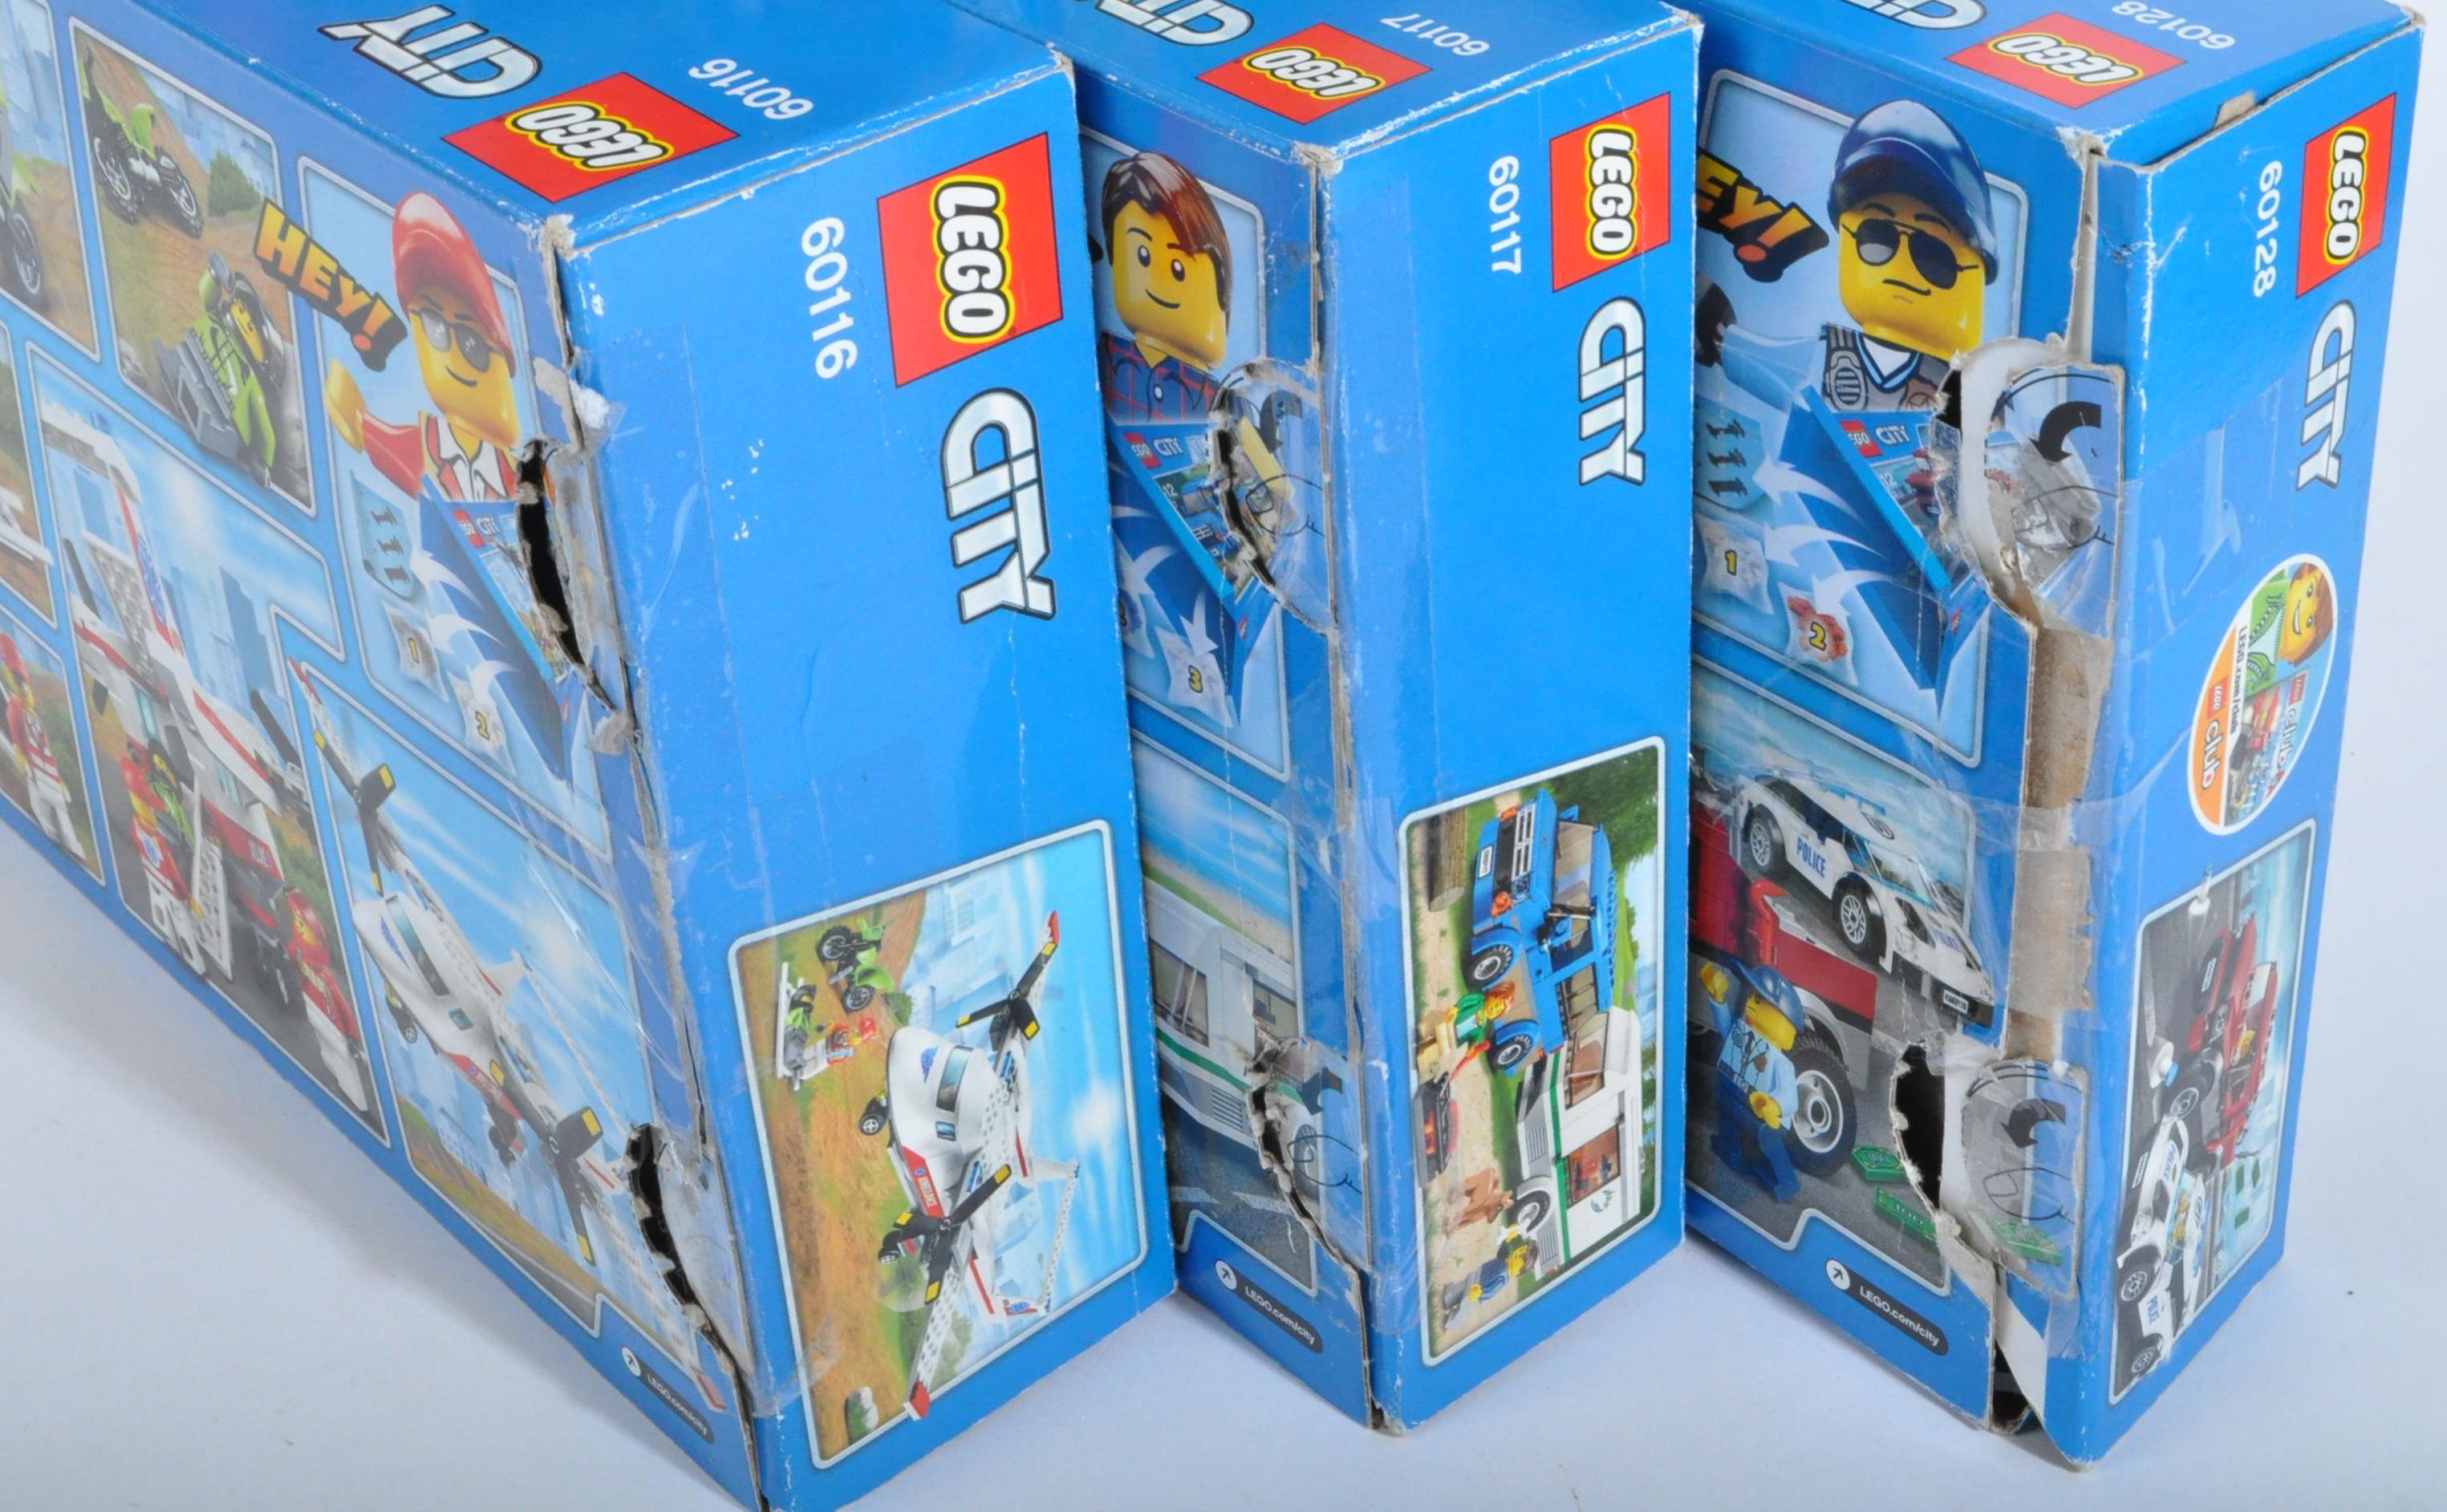 LEGO SETS - LEGO CITY - 60116 -60117 - 60128 - 60150 - 60164 - Image 3 of 3